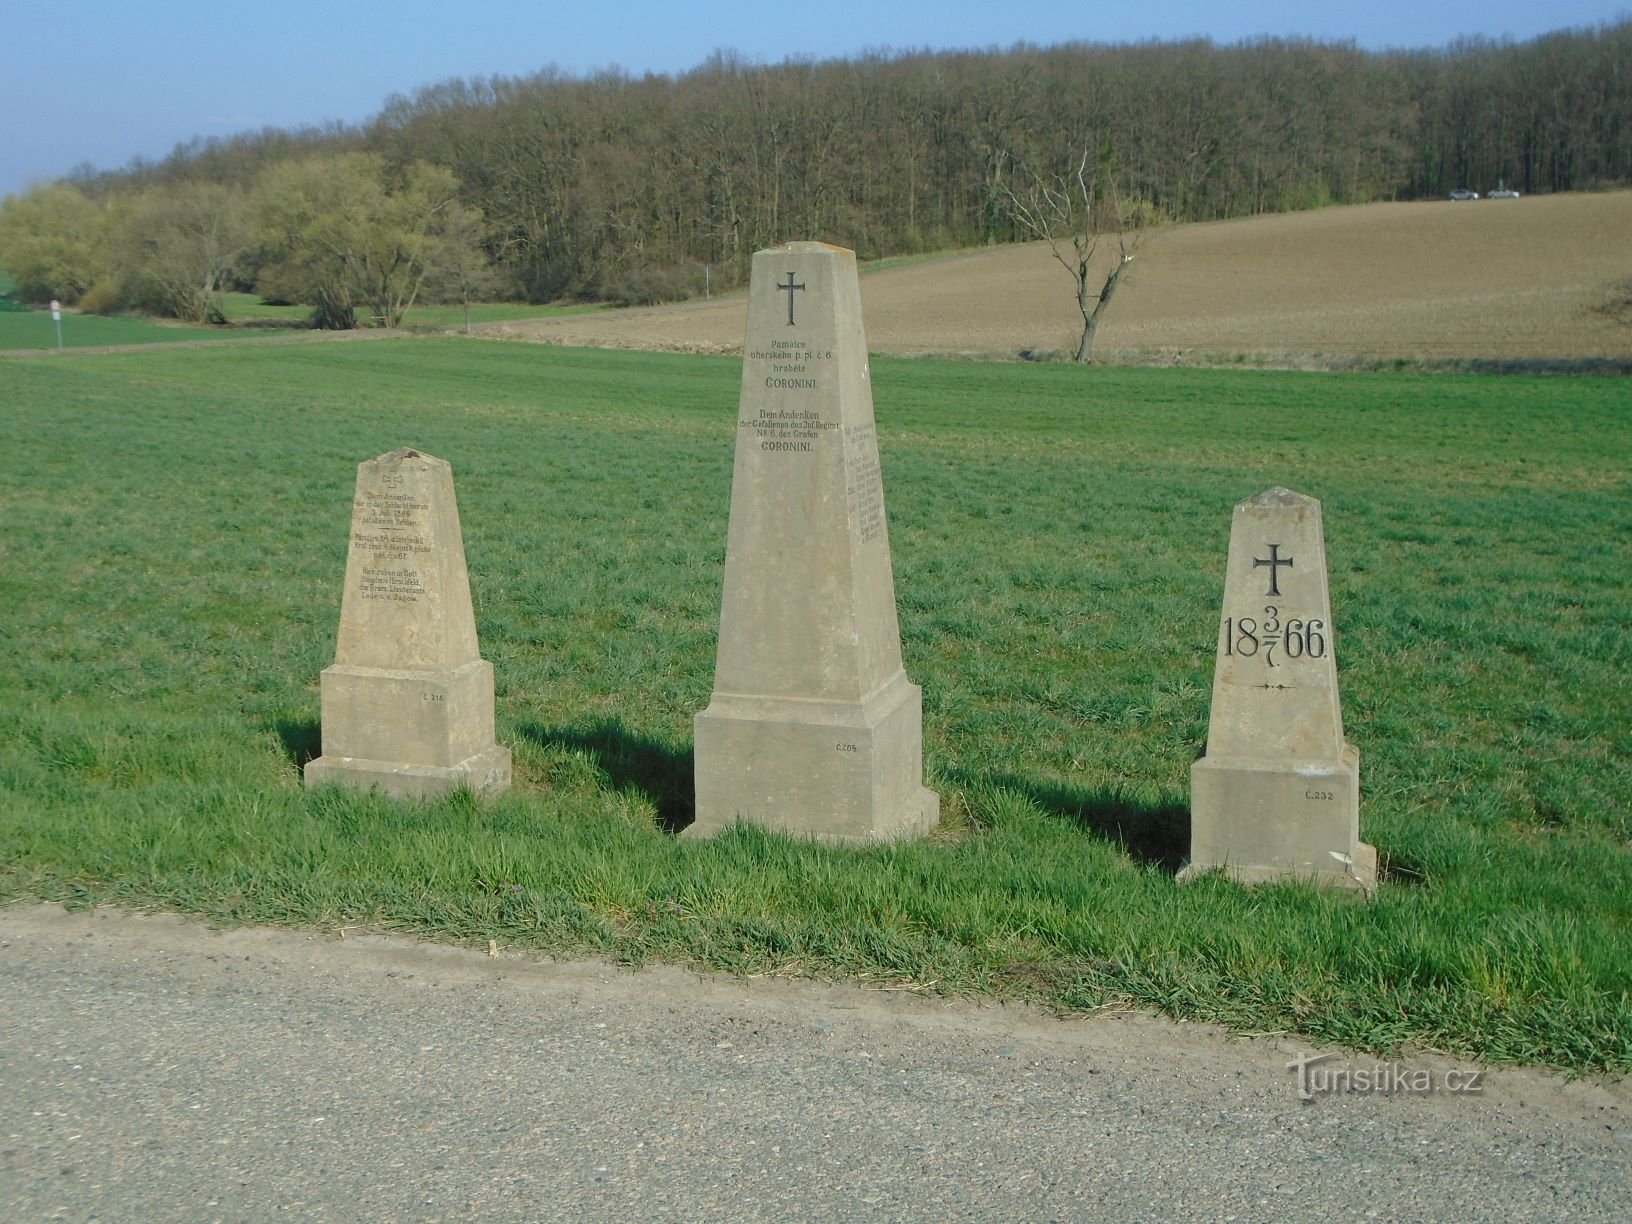 A csata emlékművei 1866-ból az út mellett (Čistěves, 7.4.2019. április XNUMX.)